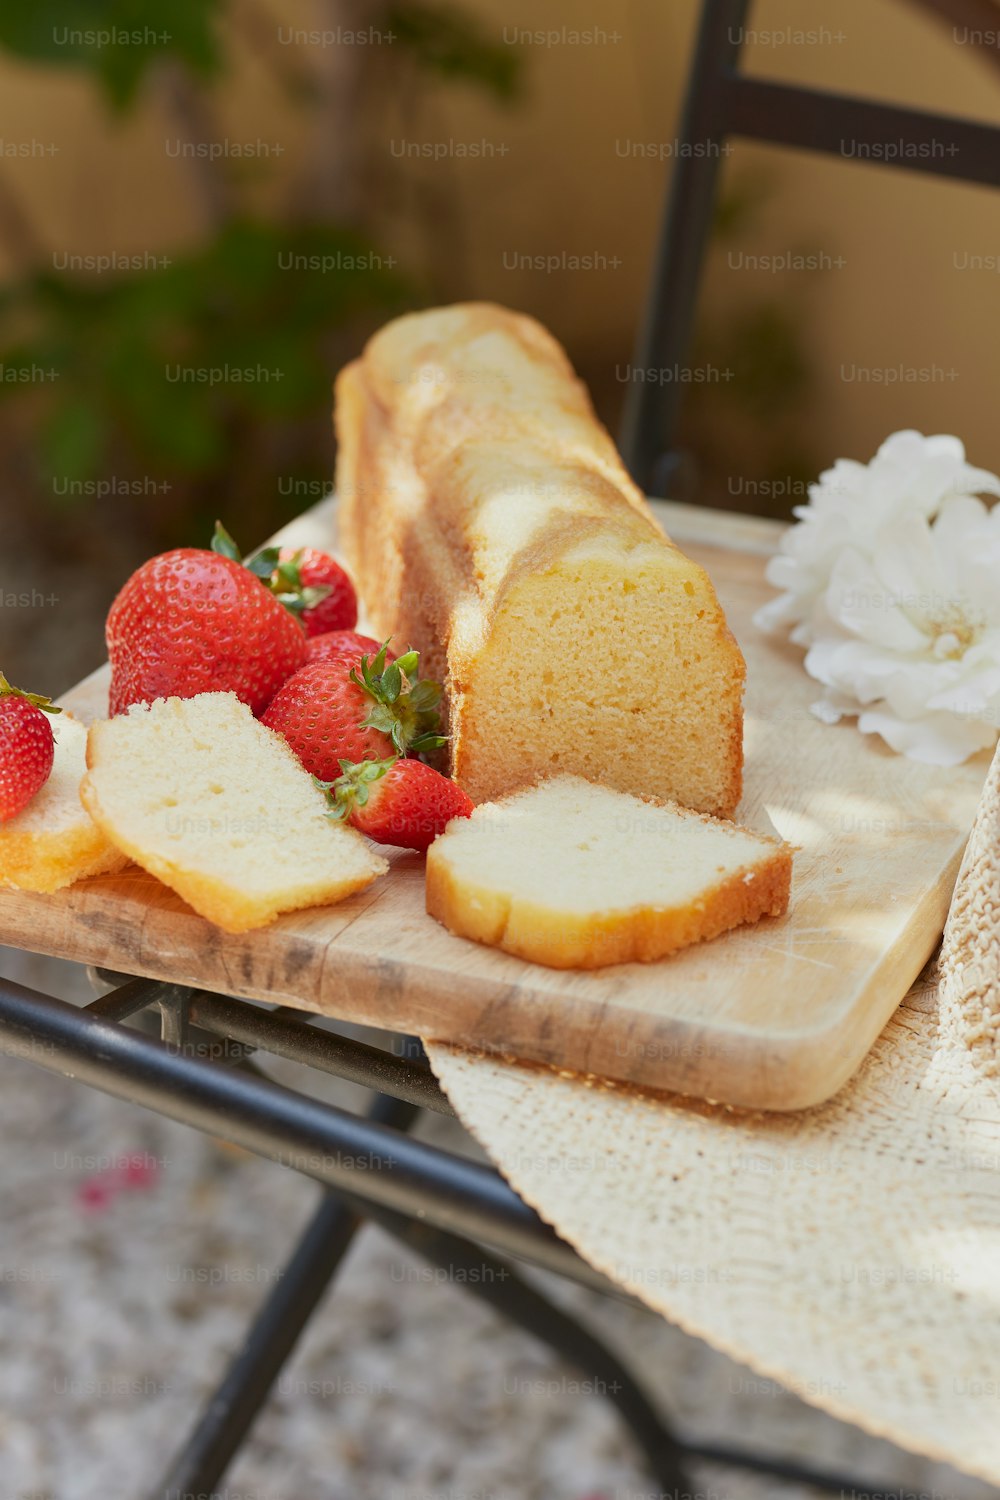 빵 한 덩어리와 얇게 썬 딸기를 얹은 테이블